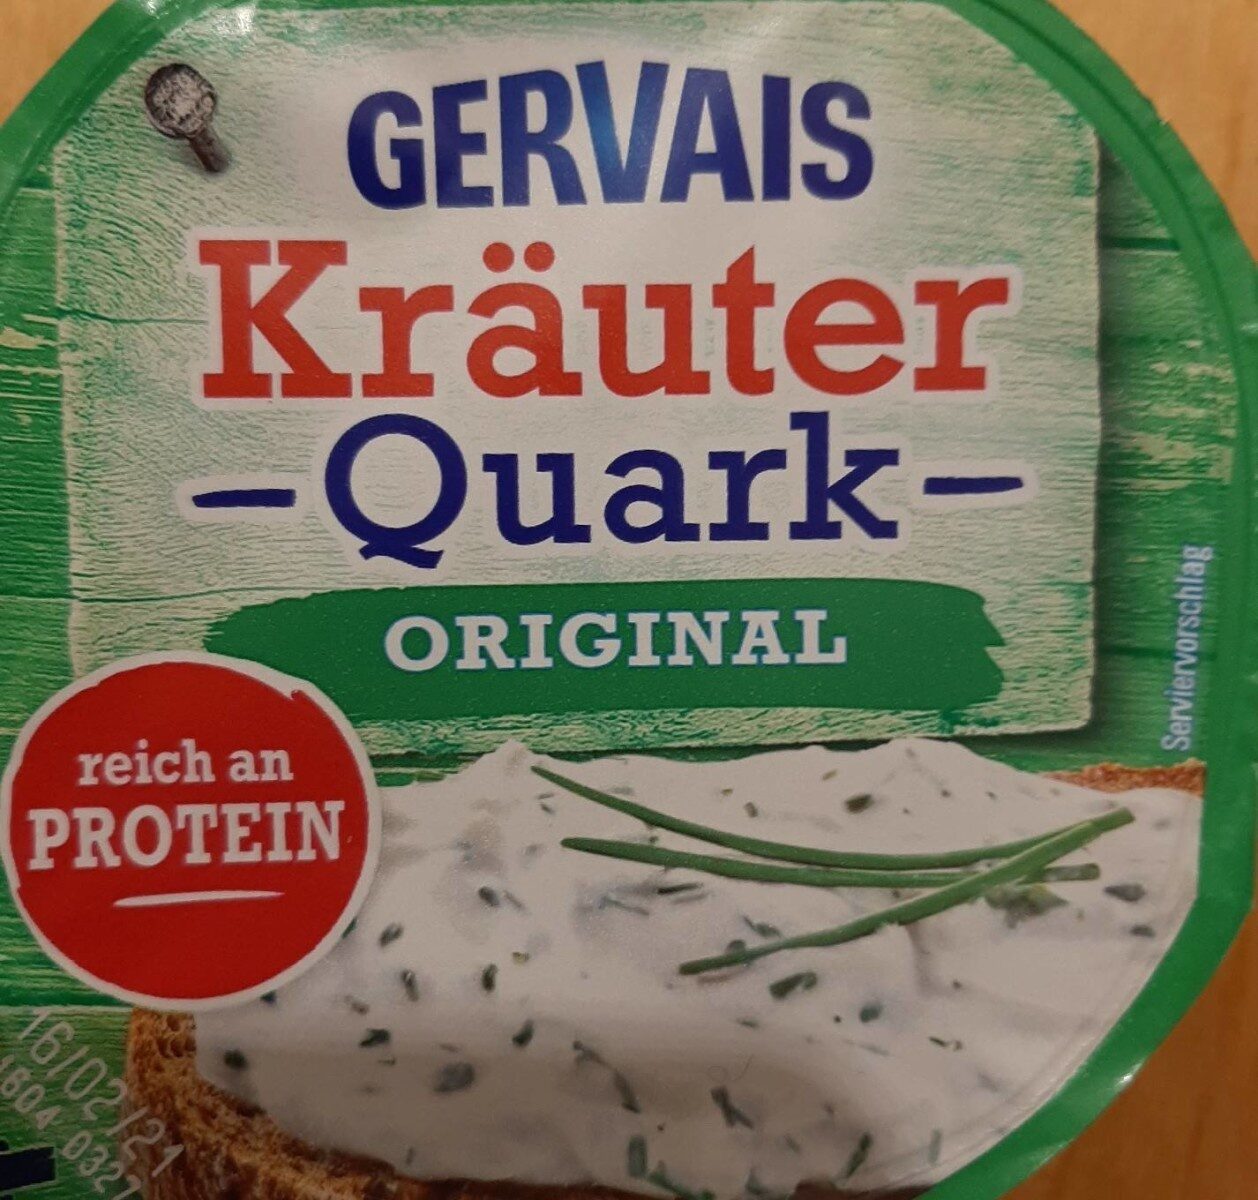 Kräuter Quark Original - Product - de